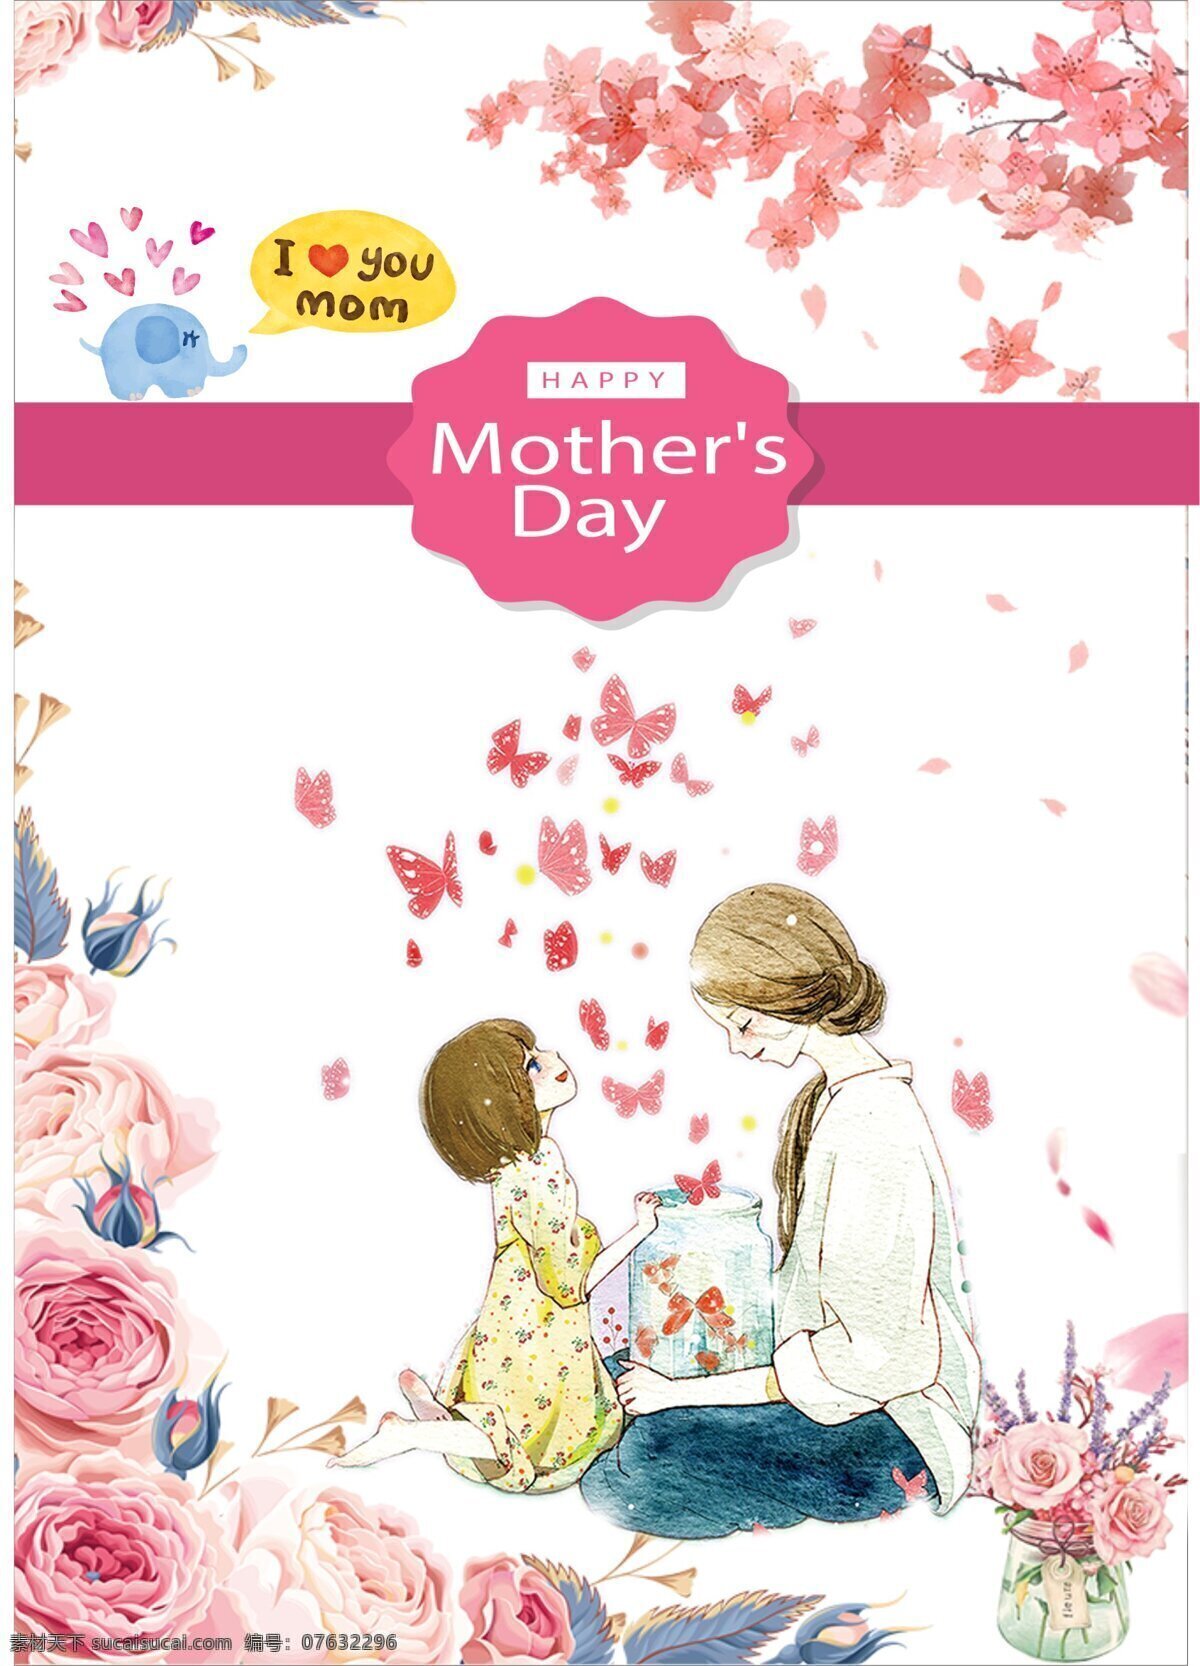 感恩 母亲节 温馨 海报 展板 感恩系列 层次分明 粉红色主色 卡通水印画